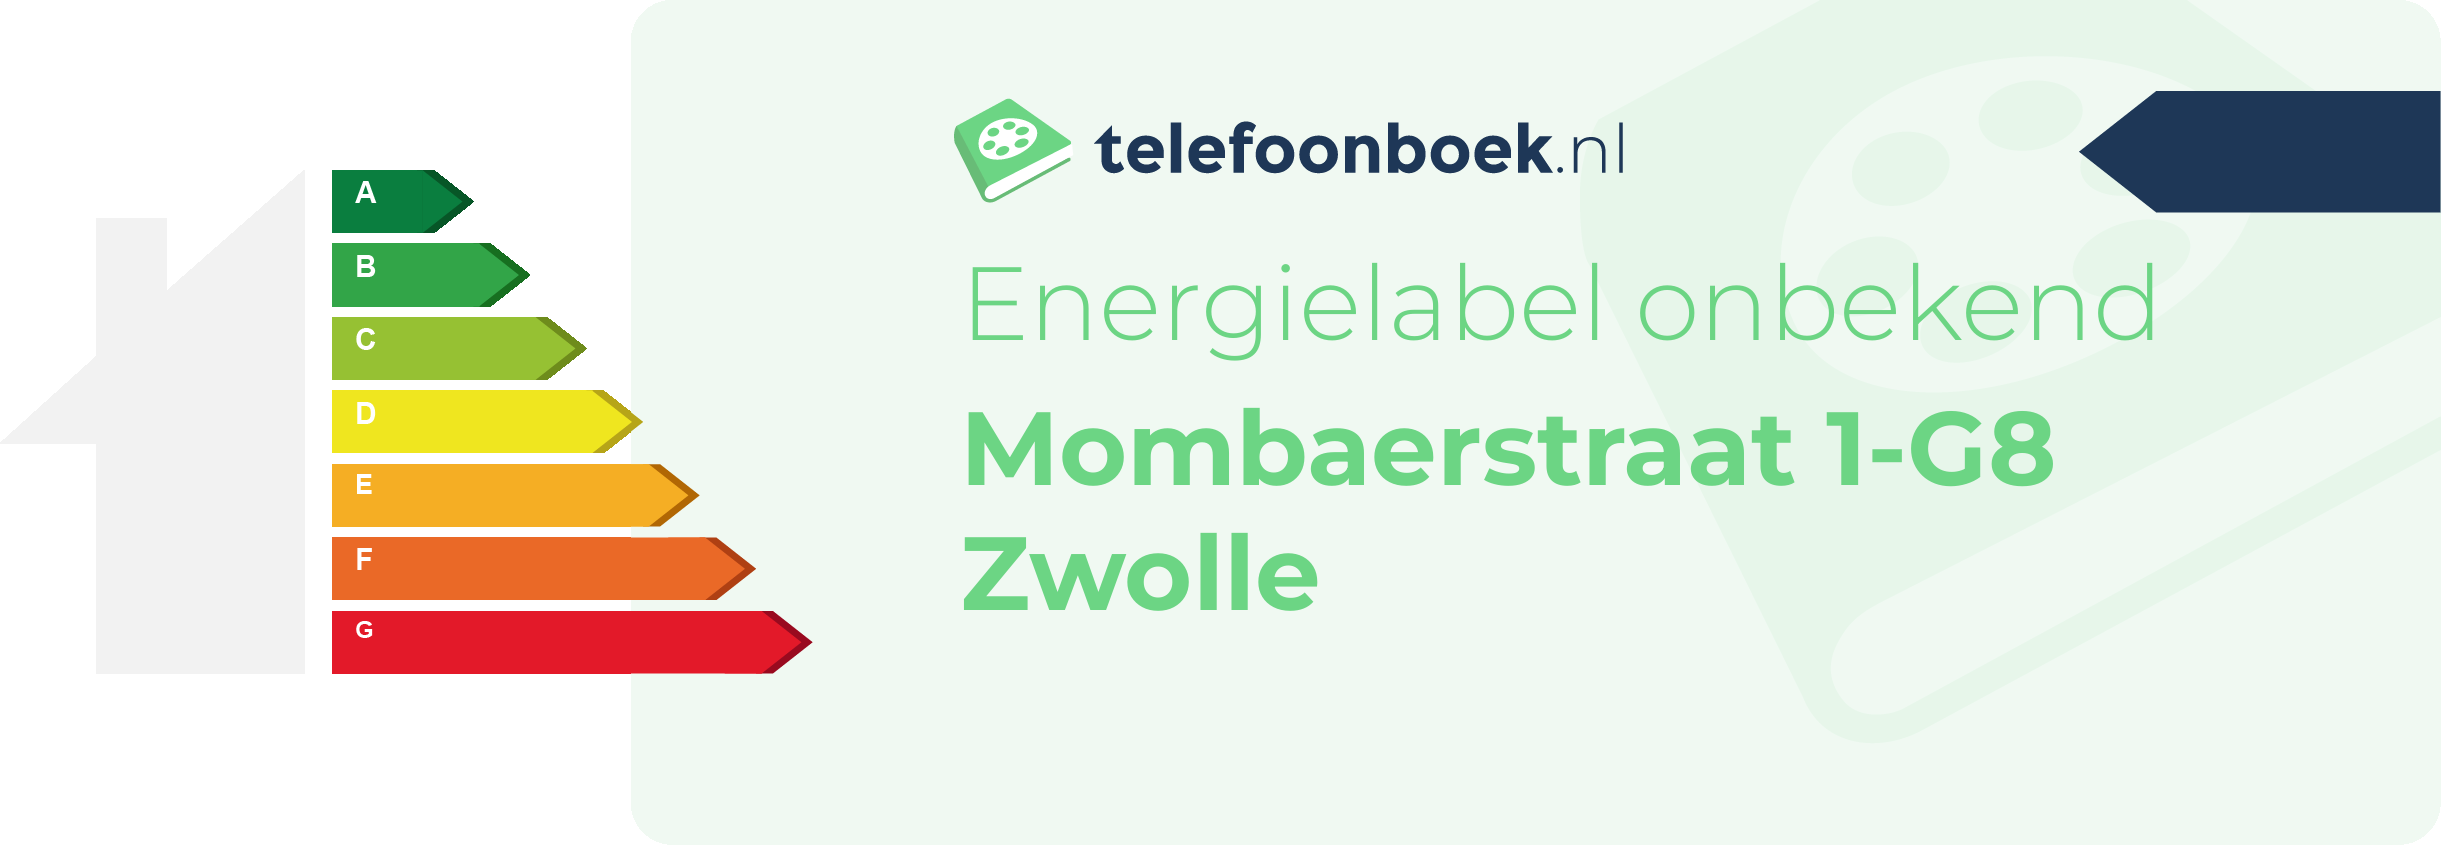 Energielabel Mombaerstraat 1-G8 Zwolle